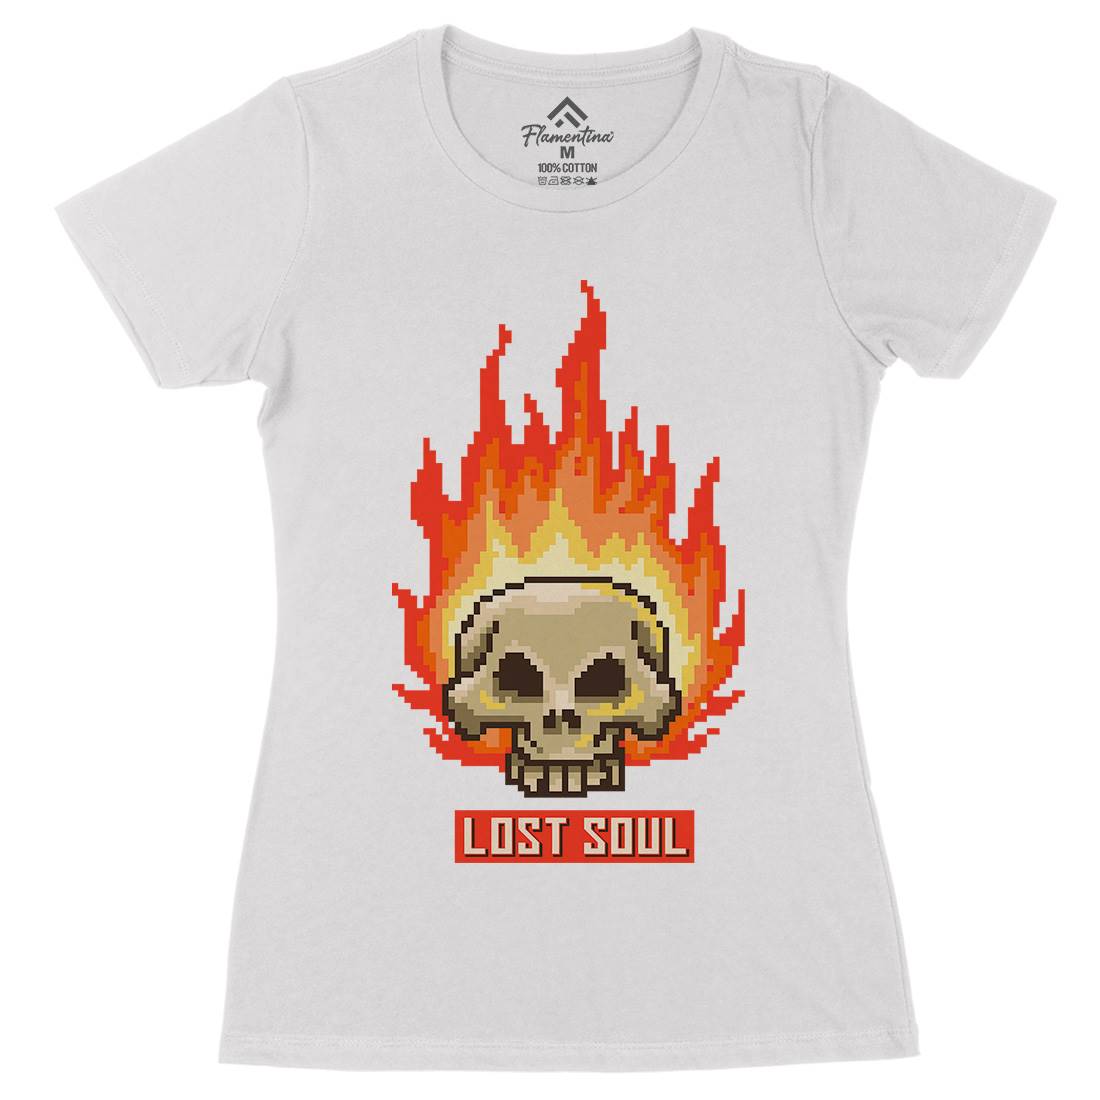 Burning Skull Lost Soul Womens Organic Crew Neck T-Shirt Retro B889